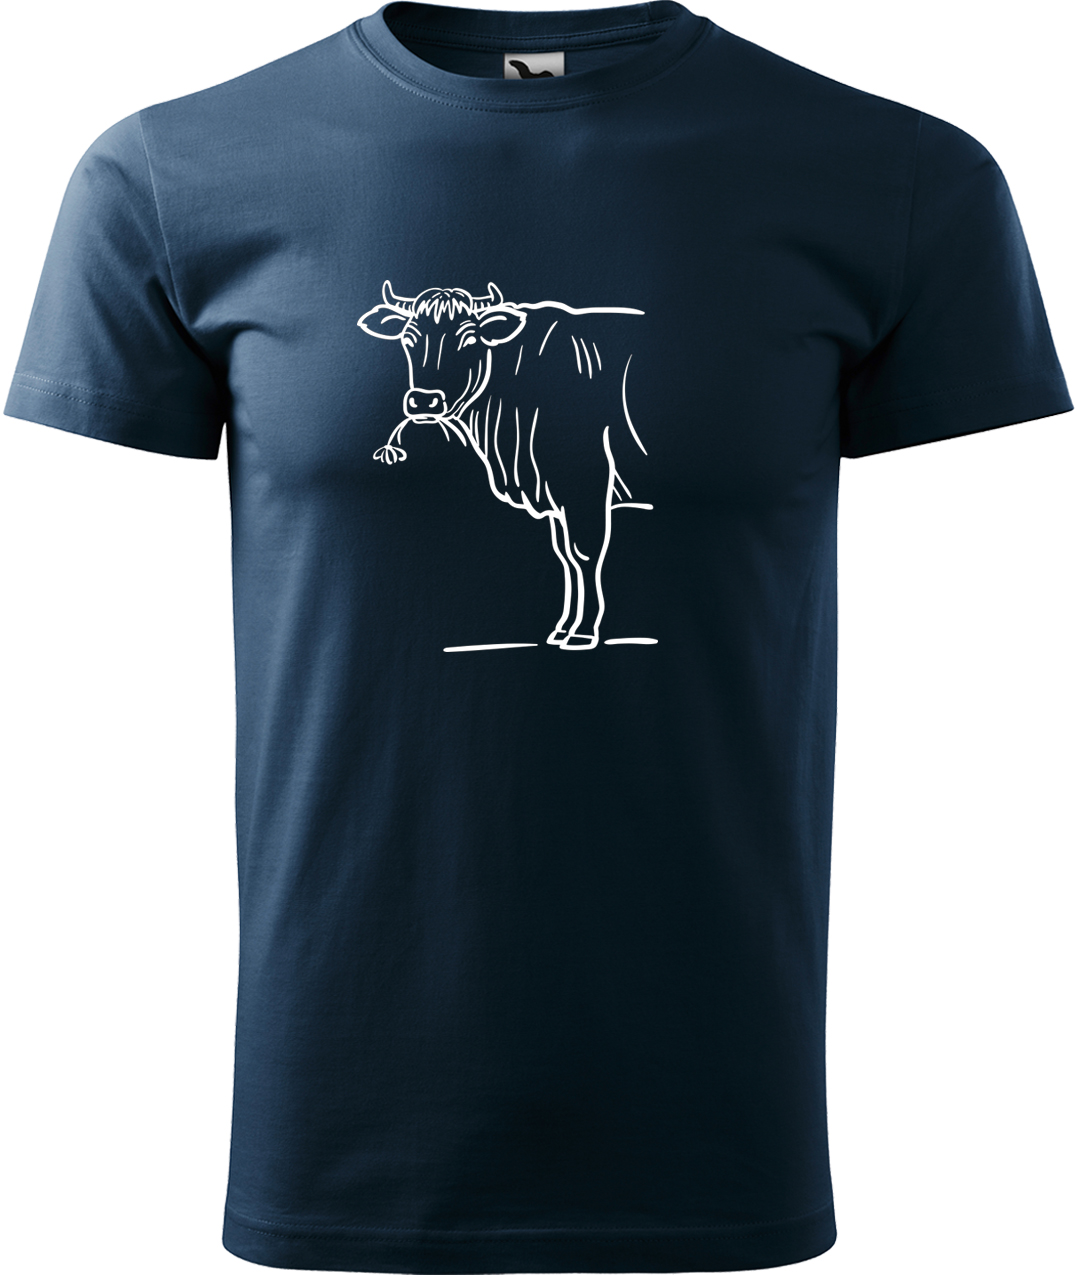 Pánské tričko s krávou - Býk Velikost: M, Barva: Námořní modrá (02), Střih: pánský